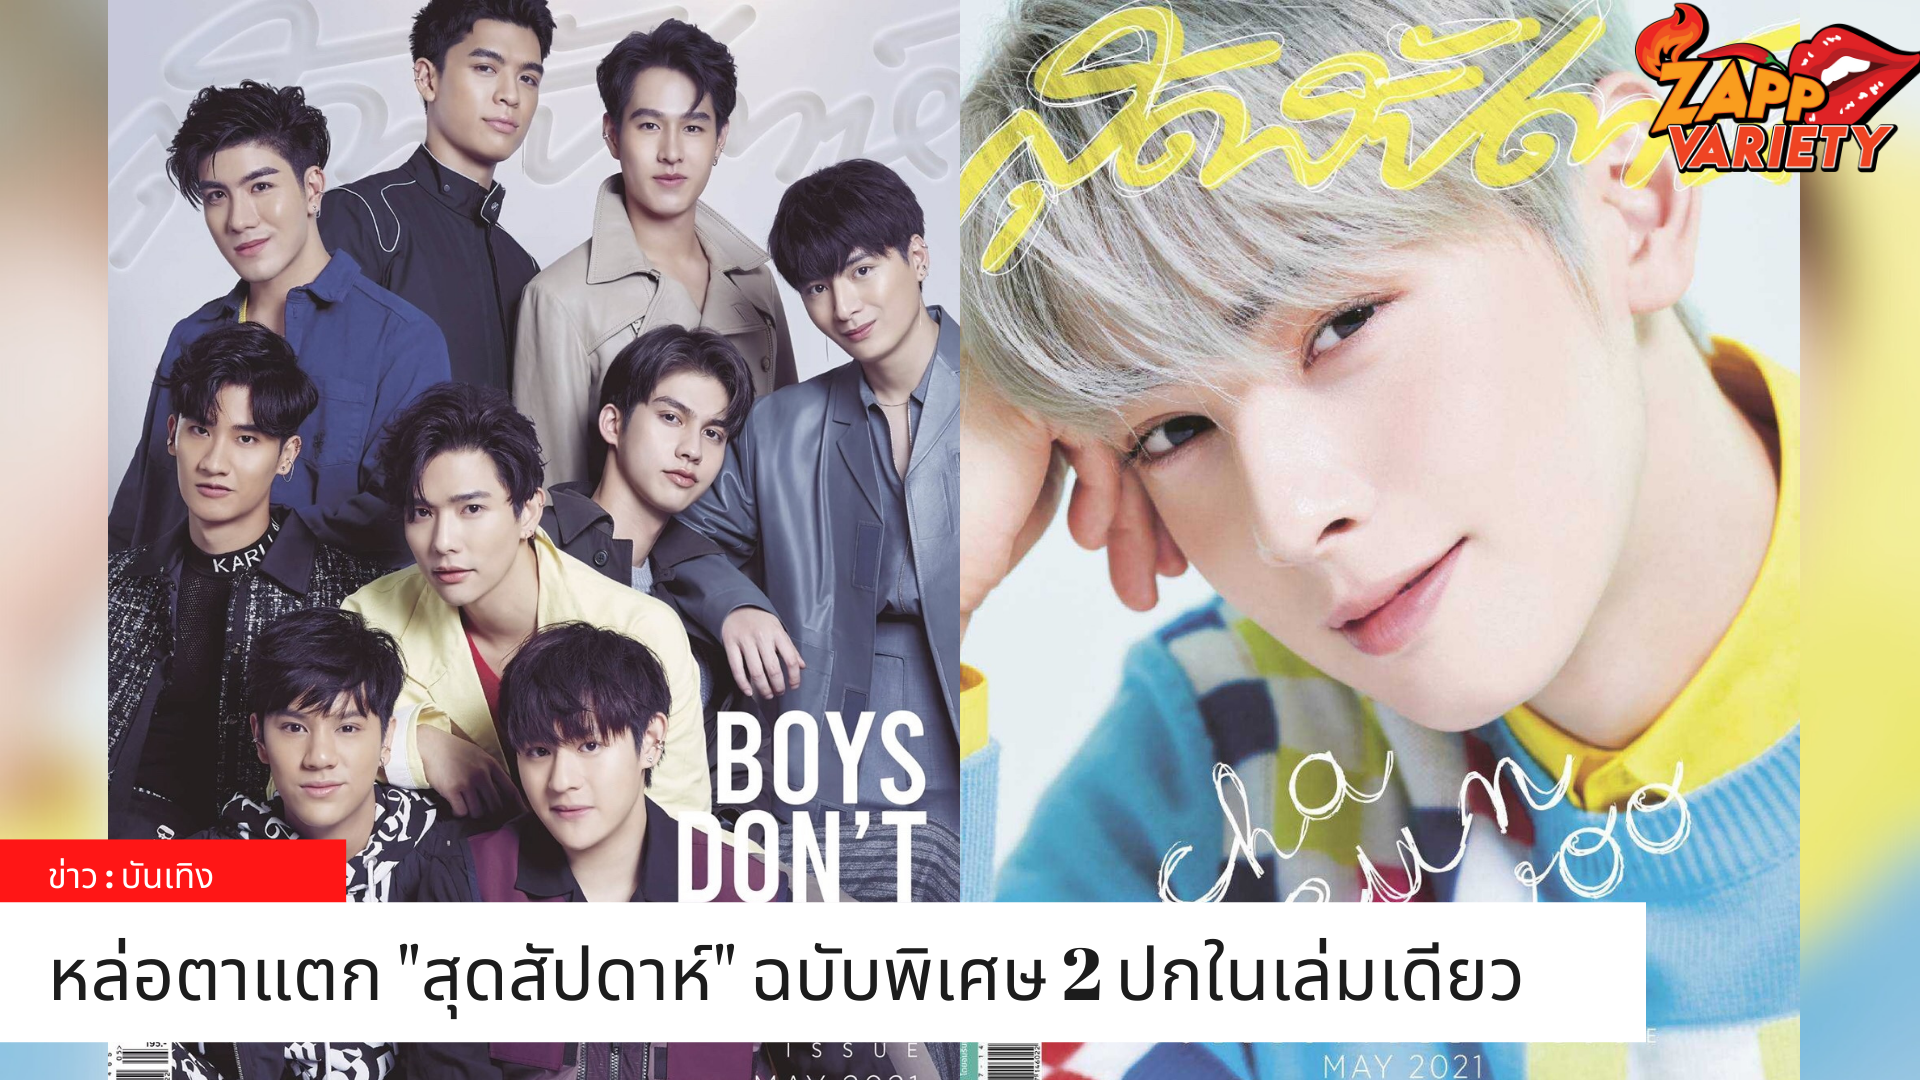 สุดสัปดาห์ ฉบับพิเศษ 2 ปกในเล่มเดียว หล่อตาแตก! แท็กทีม 9 หนุ่ม โปรเจ็กต์อัลบั้มพิเศษ Boys Don’t Cry พร้อมคว้า ‘ชาอึนอู’ ขึ้นปกนิตยสารในเมืองไทยเป็นครั้งแรก!